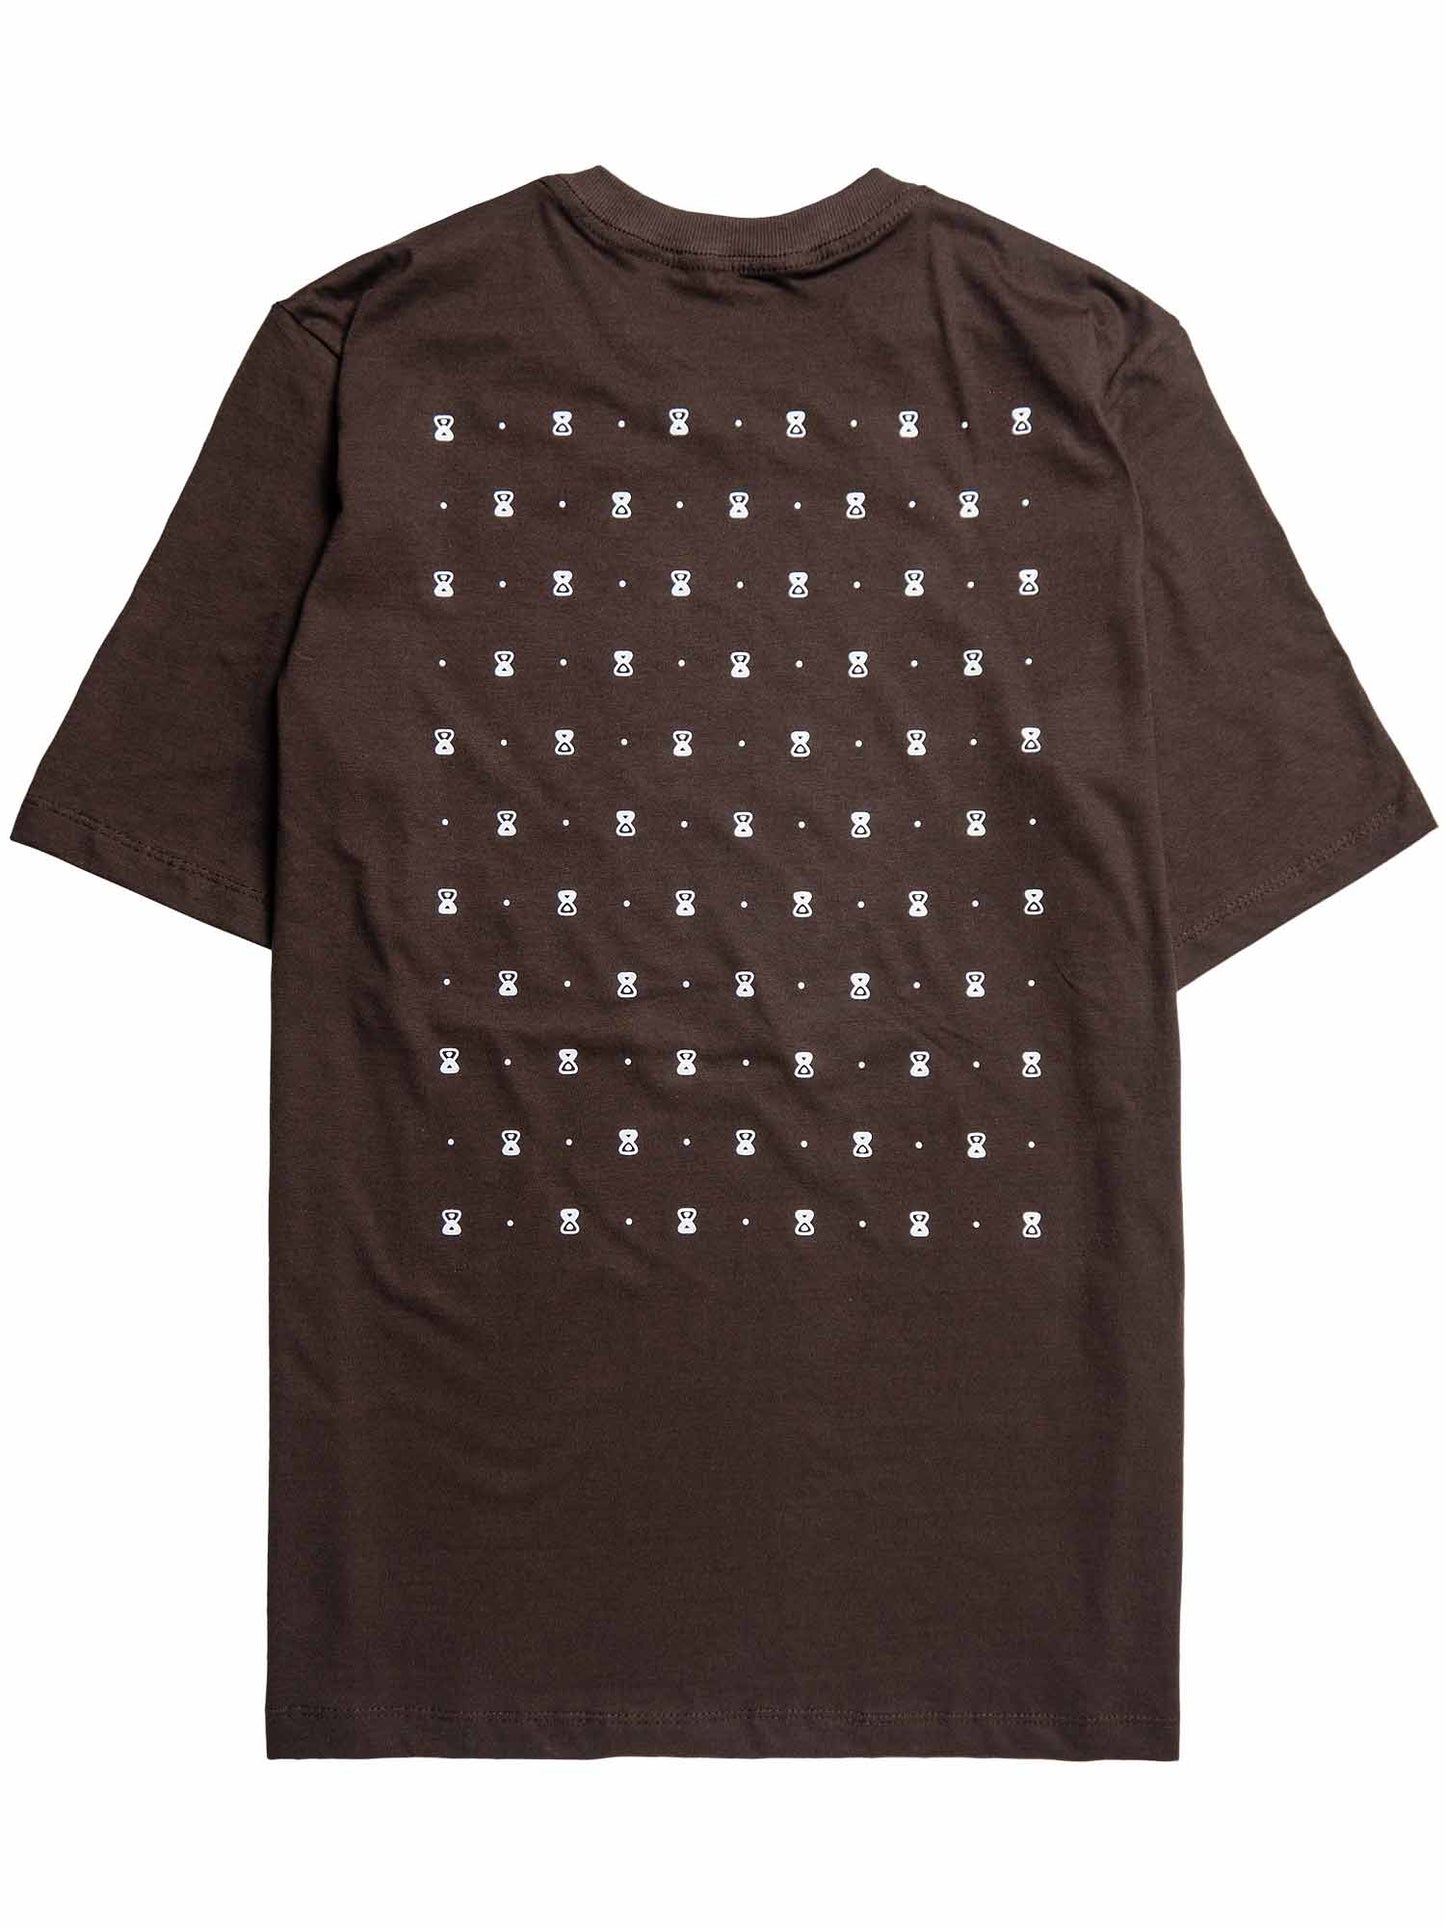 Camiseta-Future-Texturized-Marrom-Costas